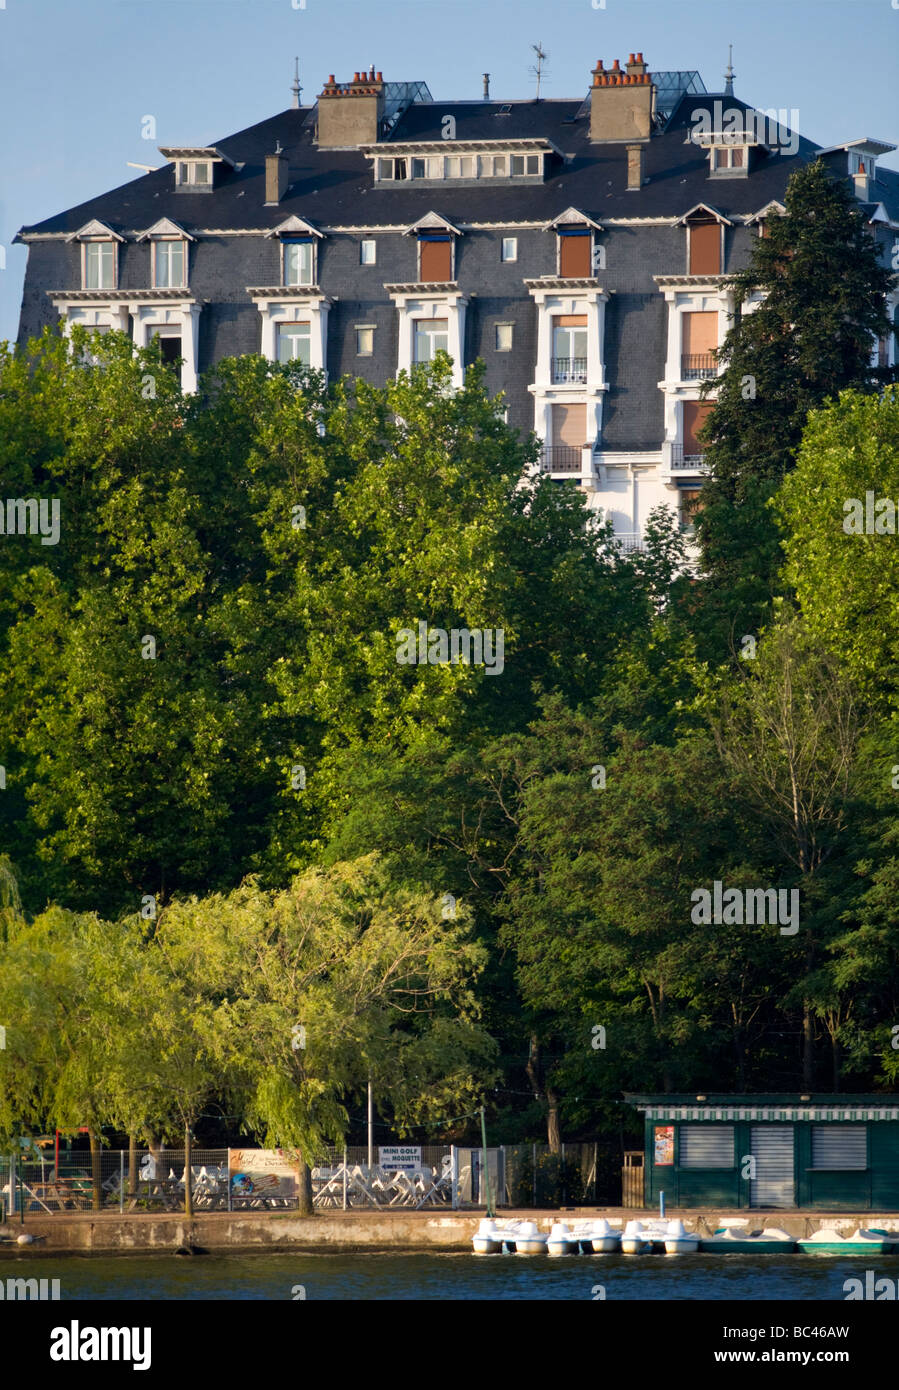 Ein Symbol für das "schöne Zeitalter": Palazzo Parks in Vichy (Allier - Frankreich). Palais des Parcs, À Vichy (Allier - Frankreich). Stockfoto